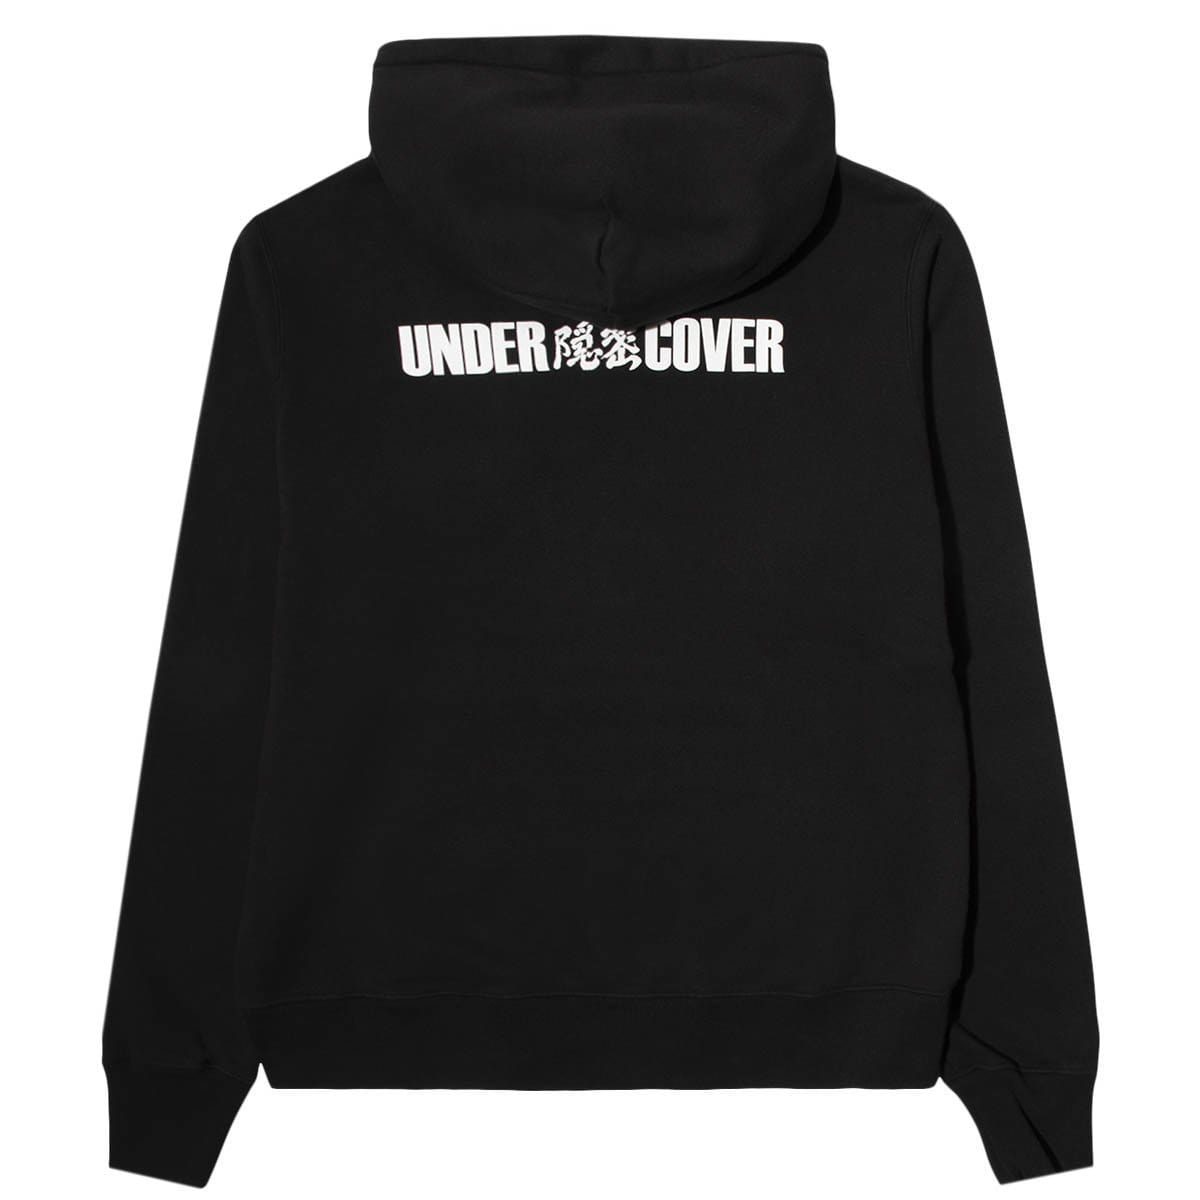 Undercover Hoodies & Sweatshirts UCZ4893-6 SWEATSHIRT